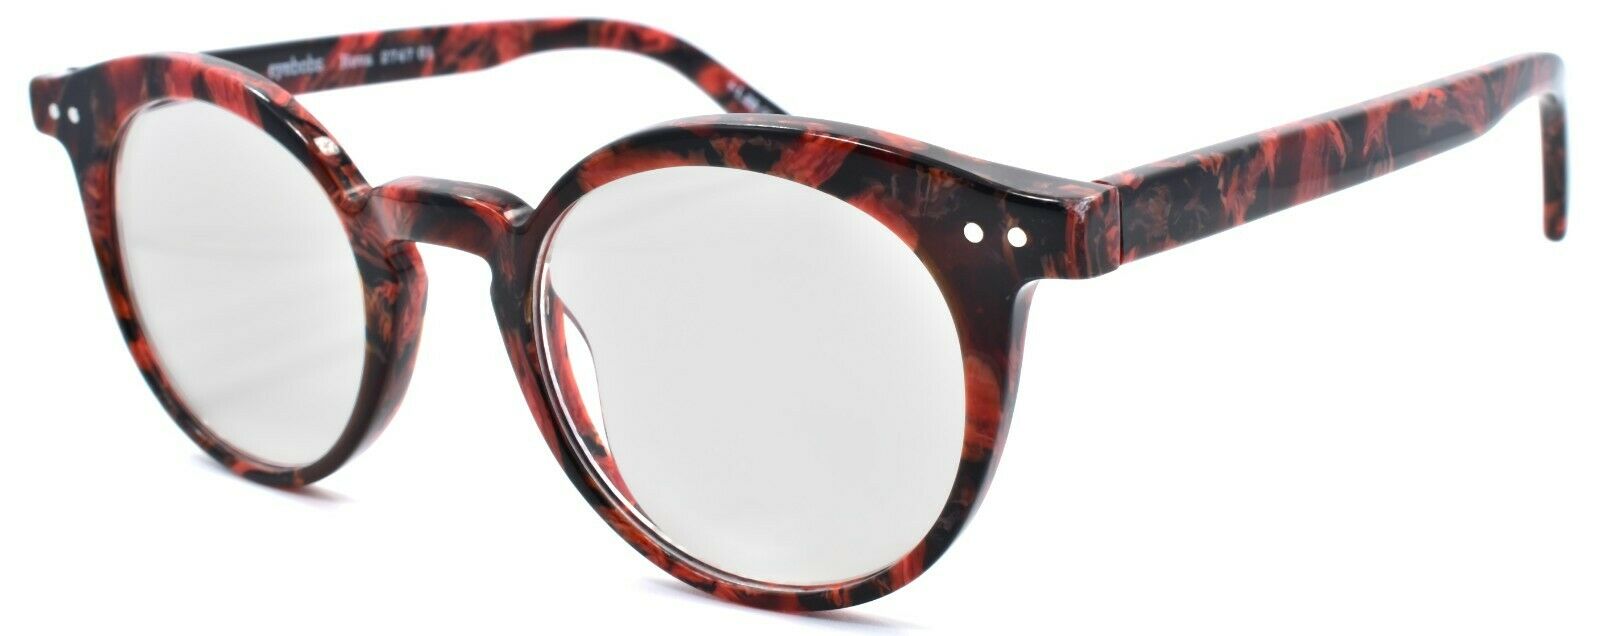 1-Eyebobs Reva 2747 01 Women's Reading Glasses Red Black Marble +2.25-842754161060-IKSpecs